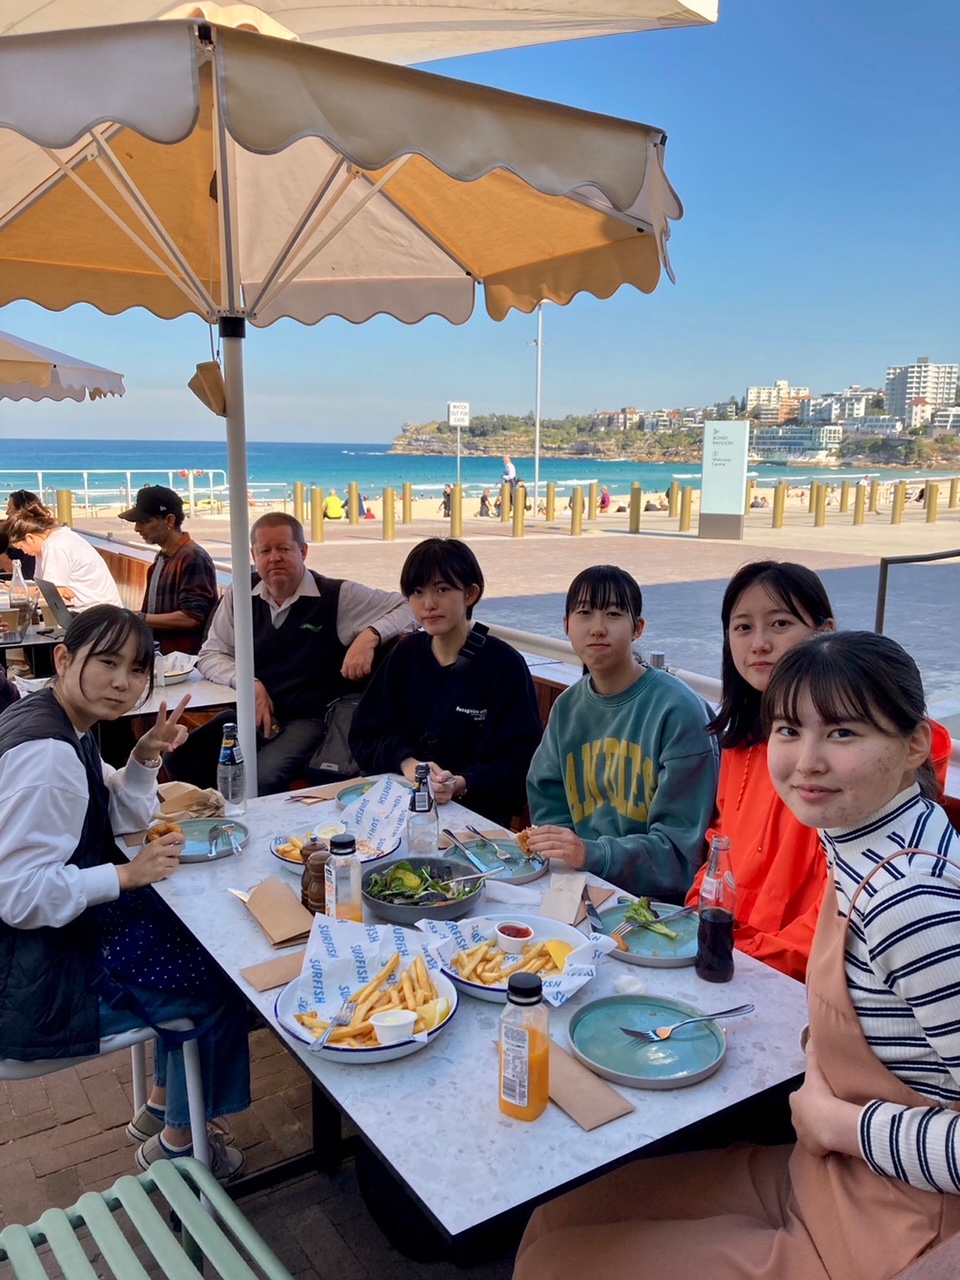 ビーチ沿いのテラス席で食事をする生徒5人とGM市担当者の写真